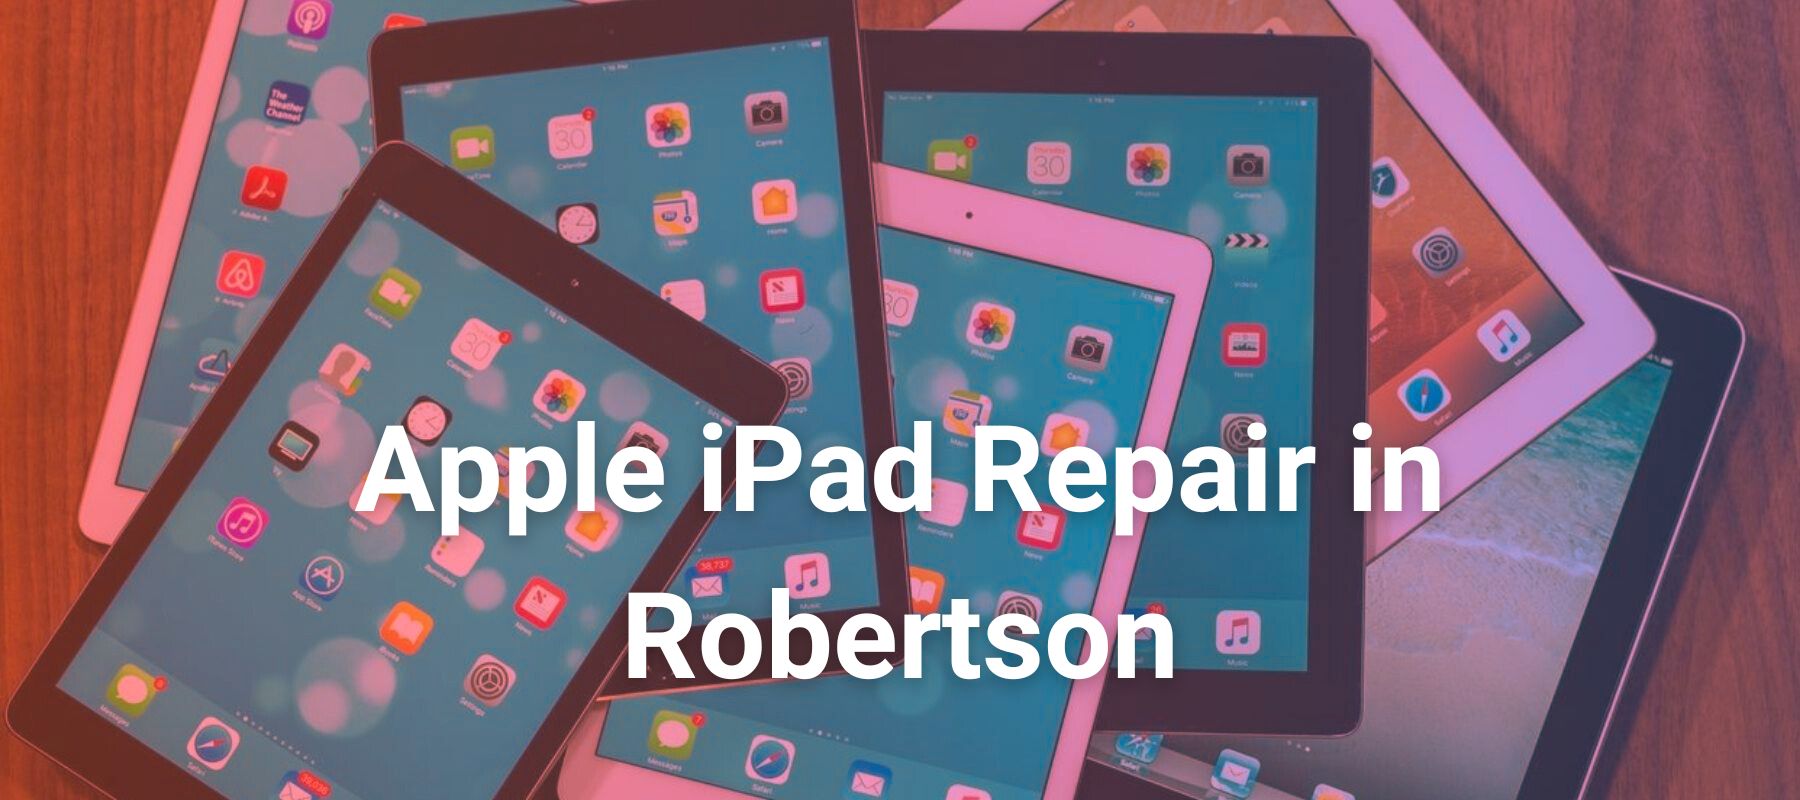 Apple iPad Repair in Robertson